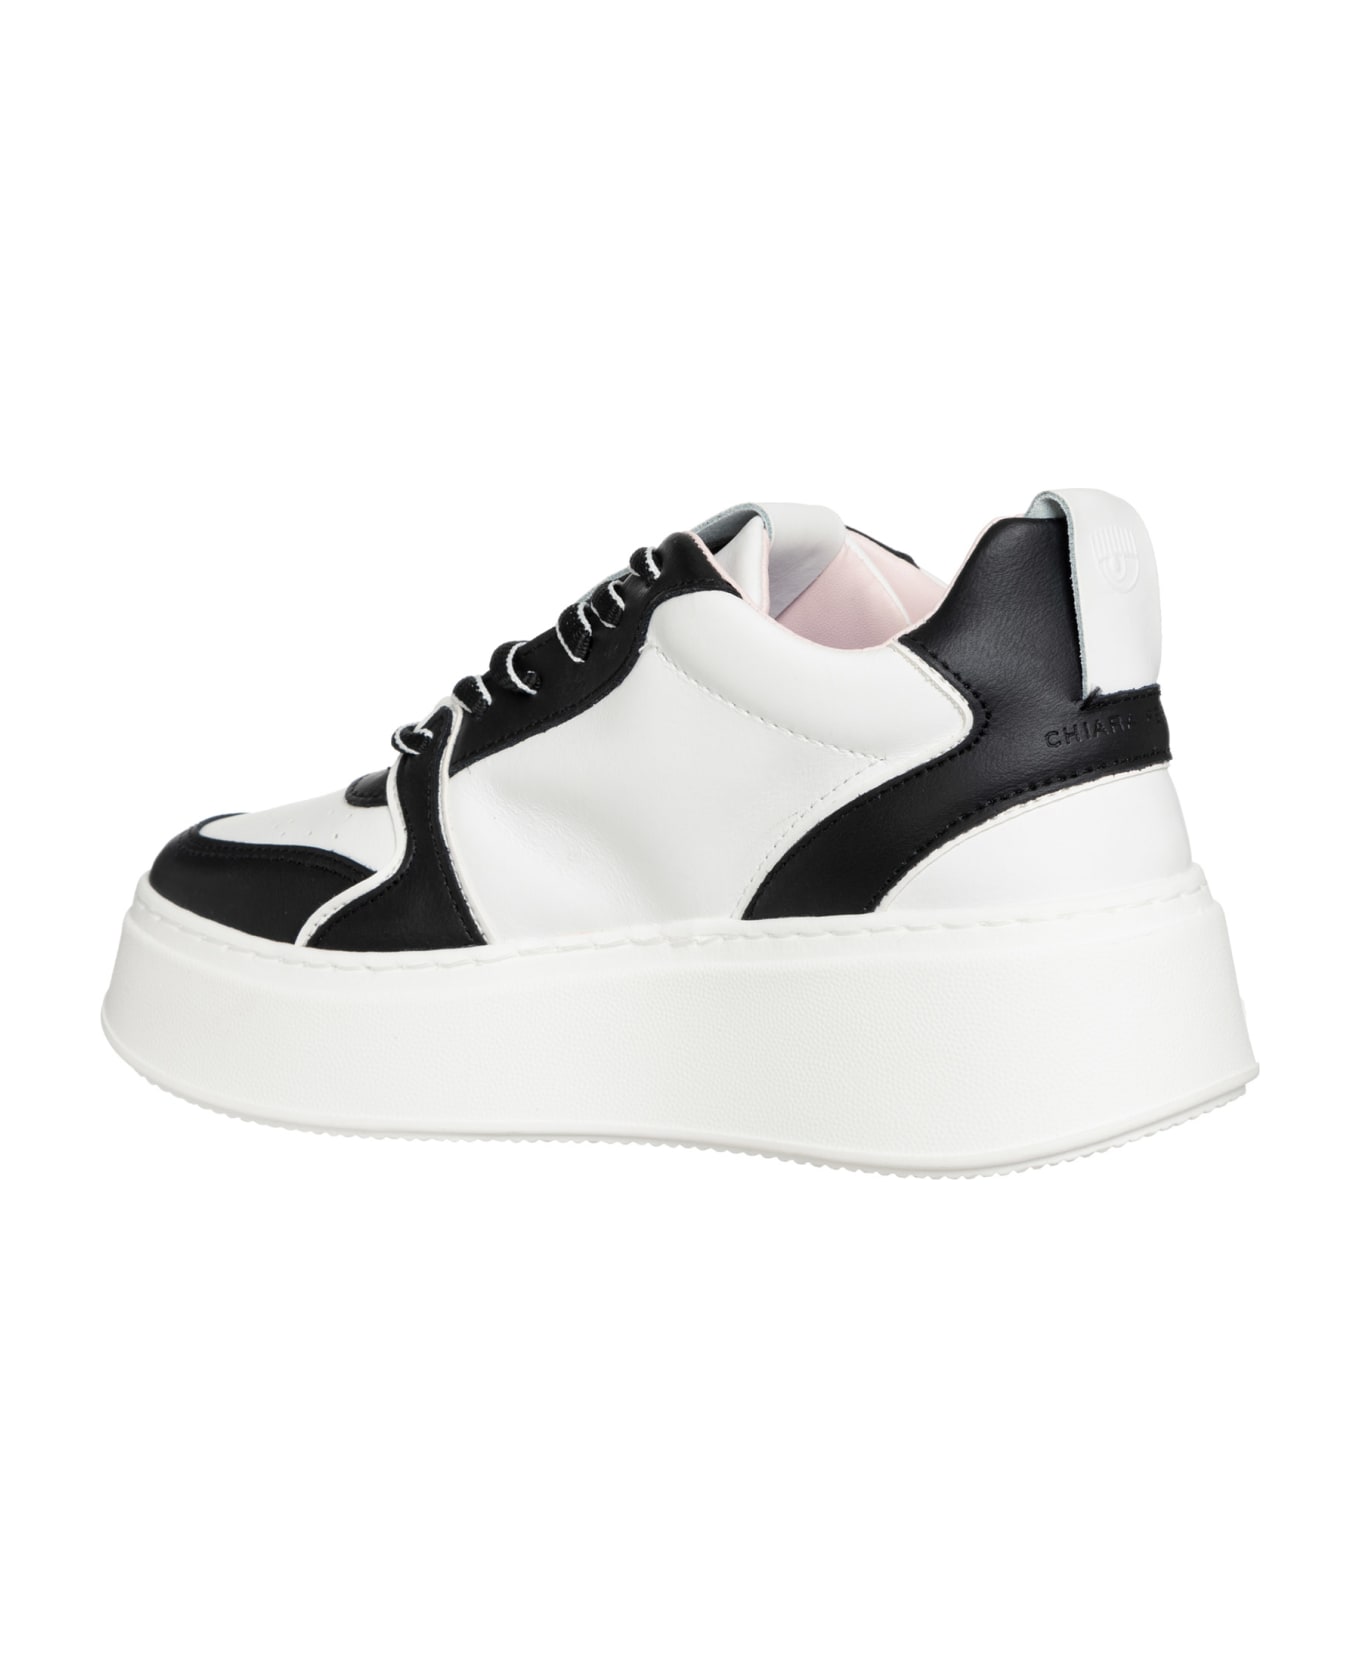 Chiara Ferragni School Leather Sneakers - White Black